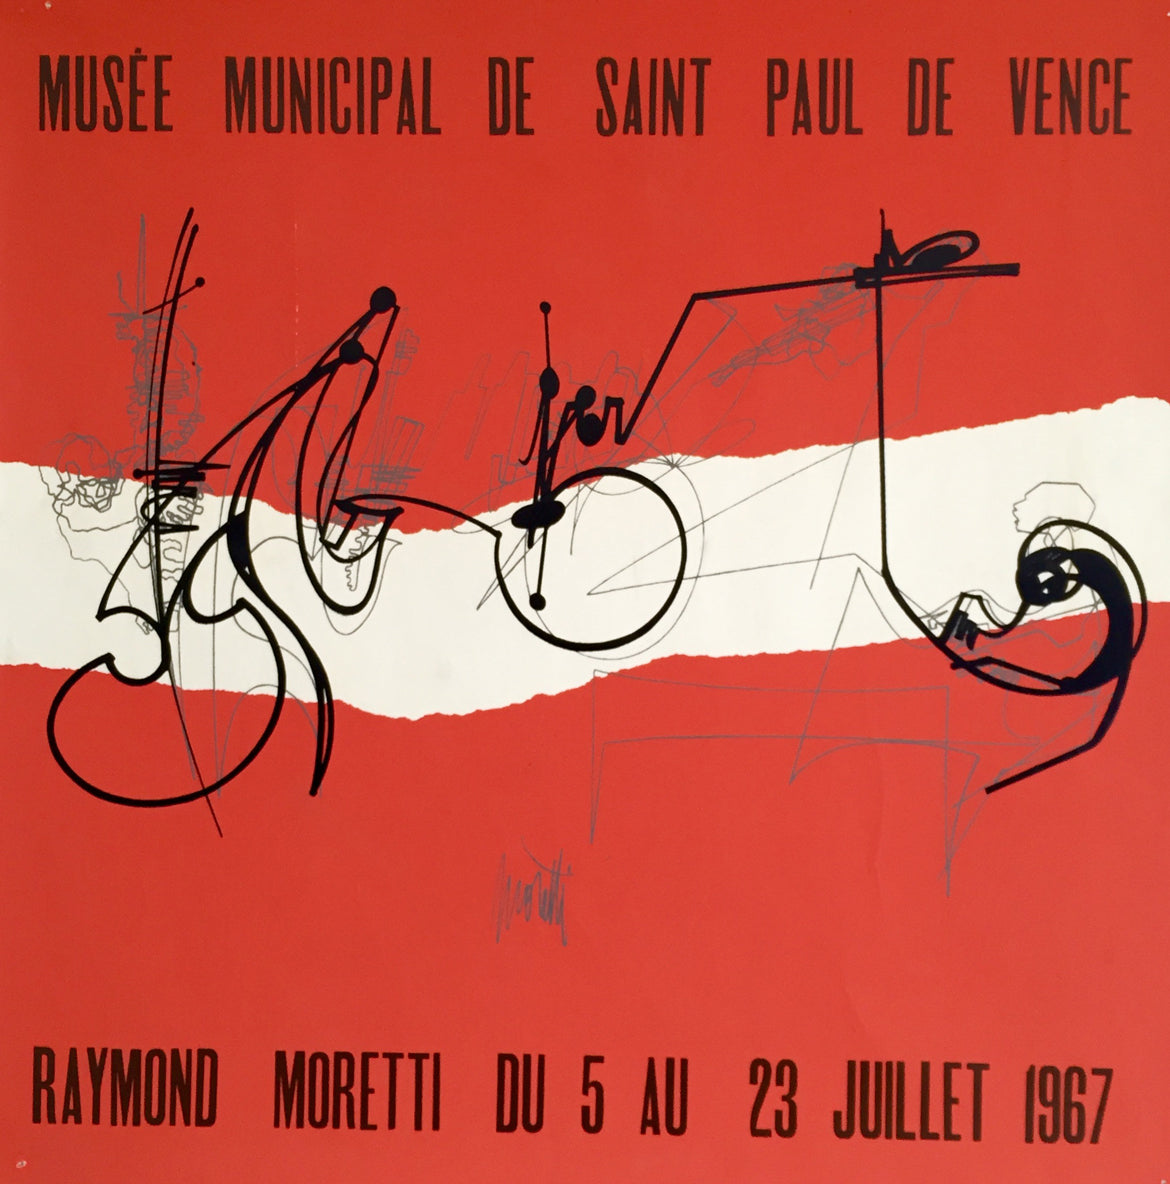 Affiche lithographique, Raymond Moretti.   Musée municipal de Saint Paul de Vence, du 5 au 23 juillet 1967.